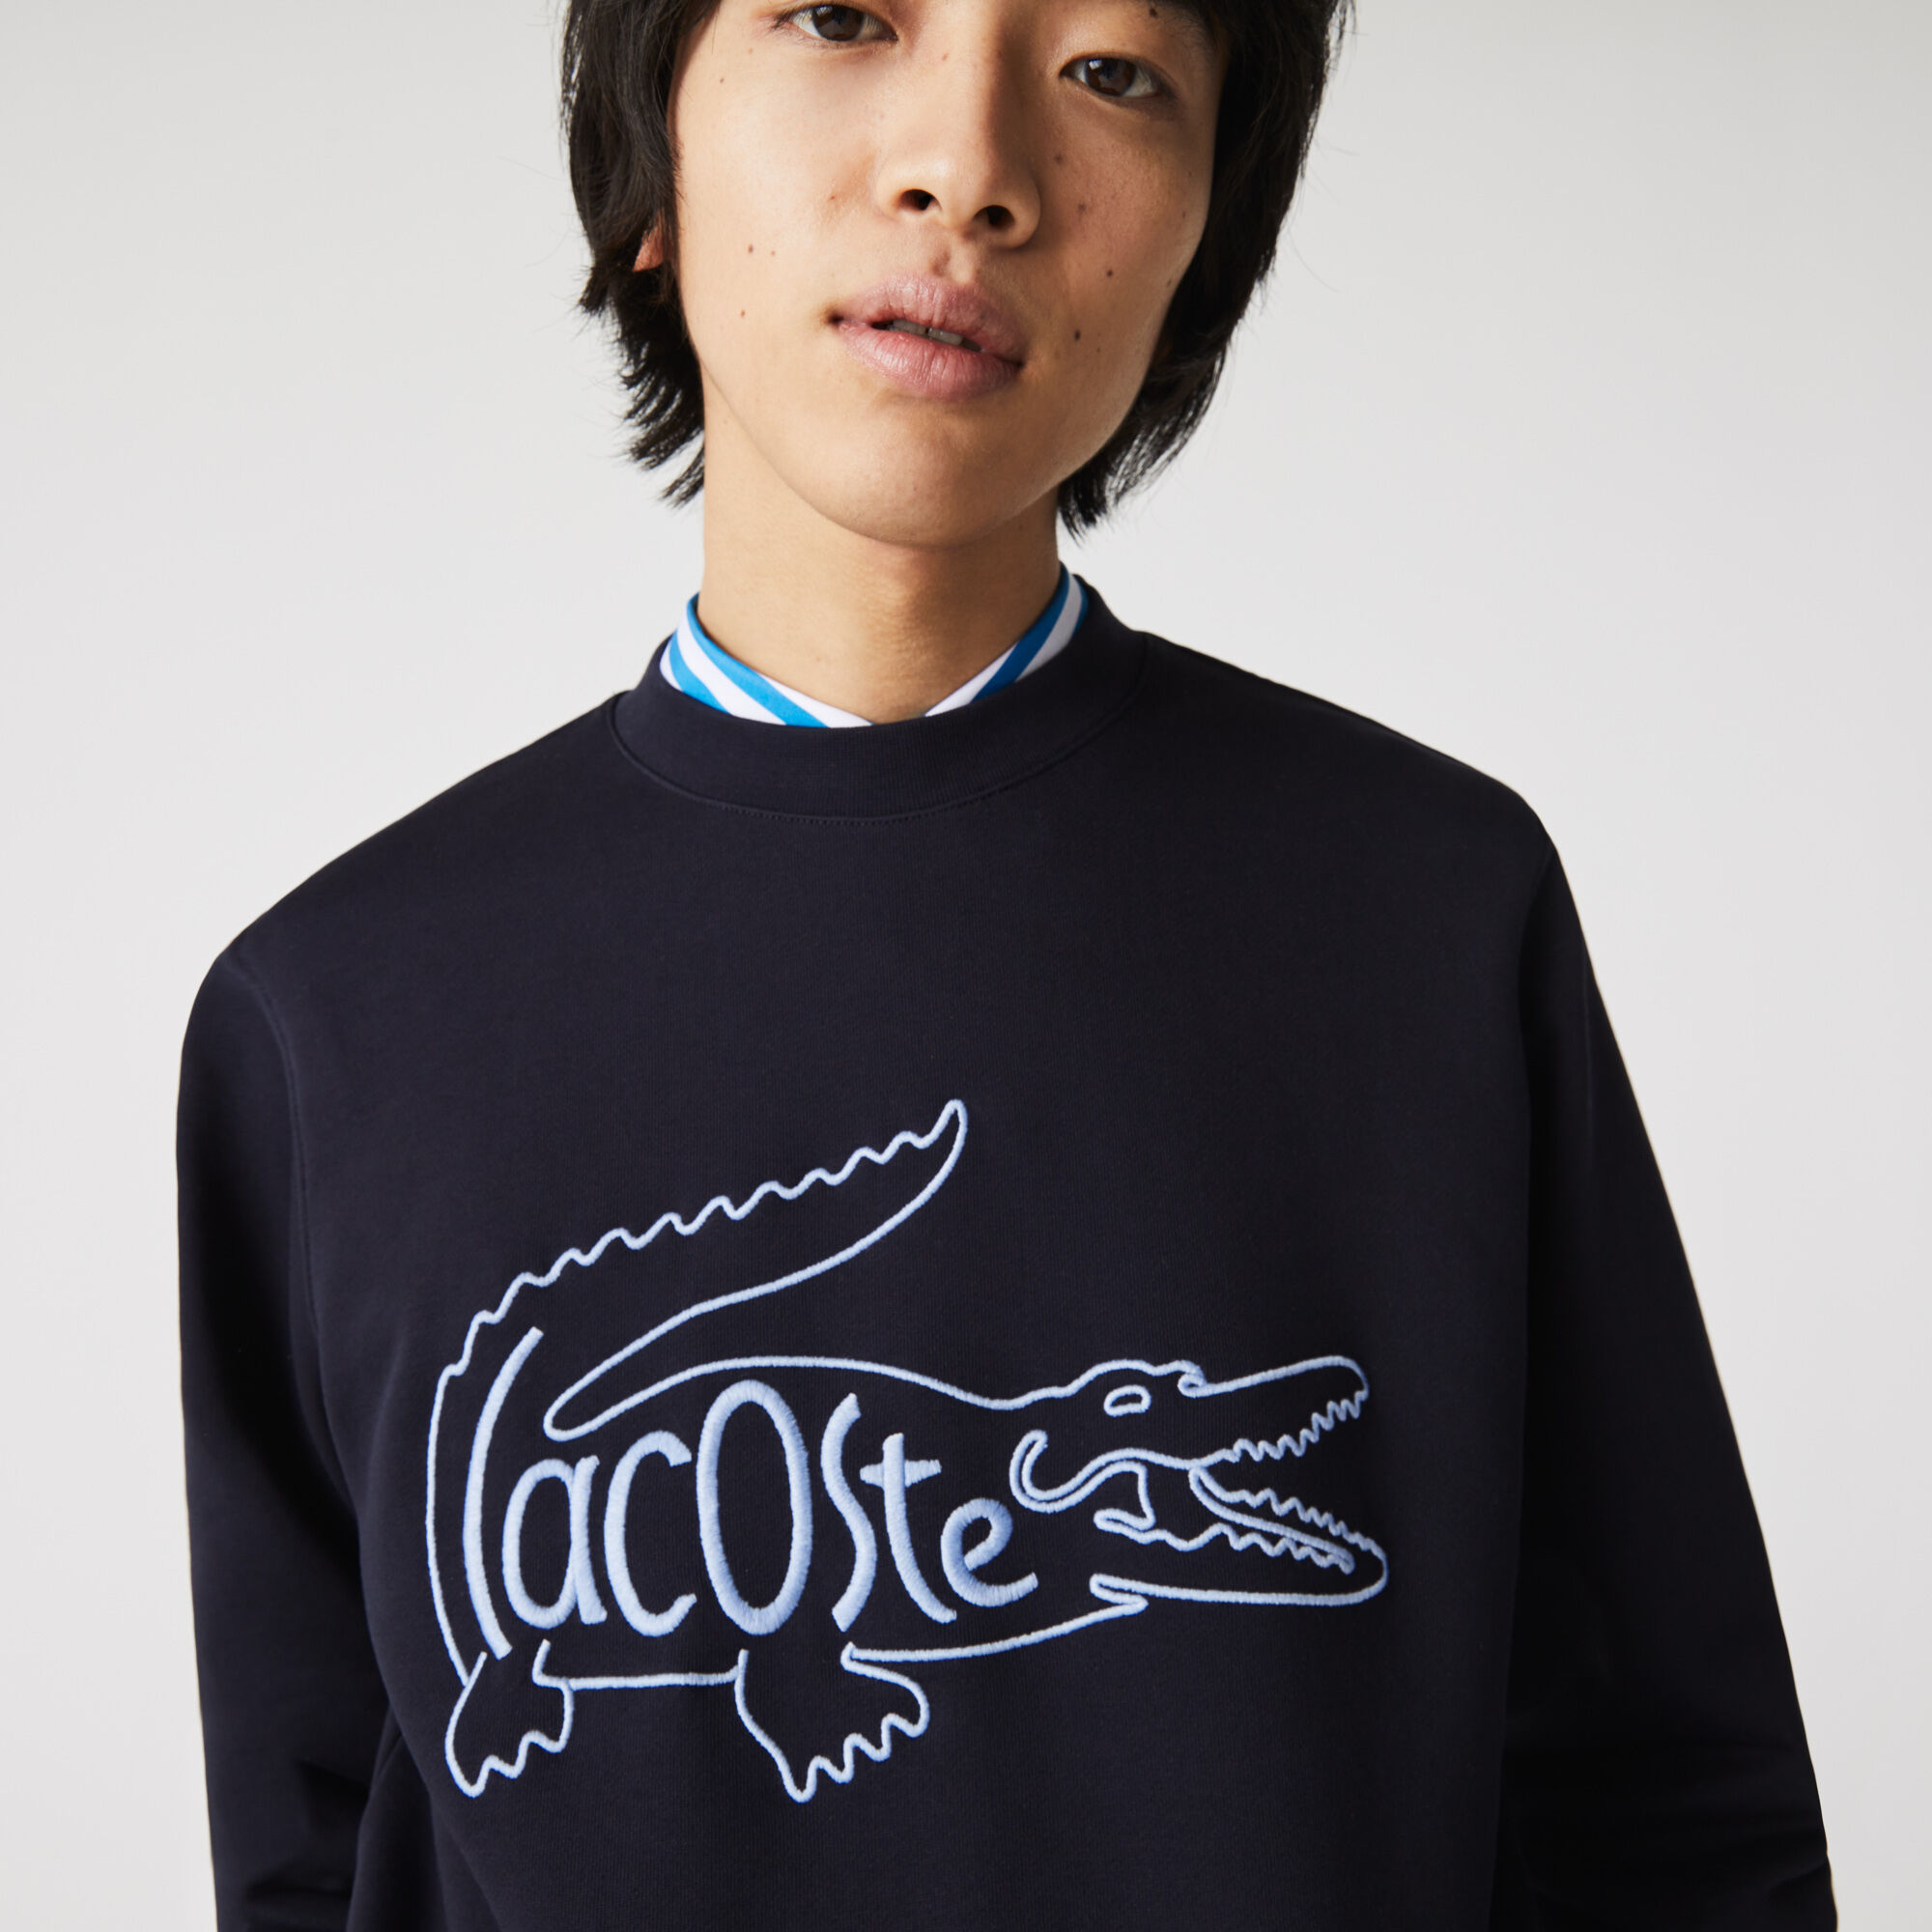 Lacoste Mens Cotton Croc Print Crew Neck Cotton Sweater 35% OFF RRP 